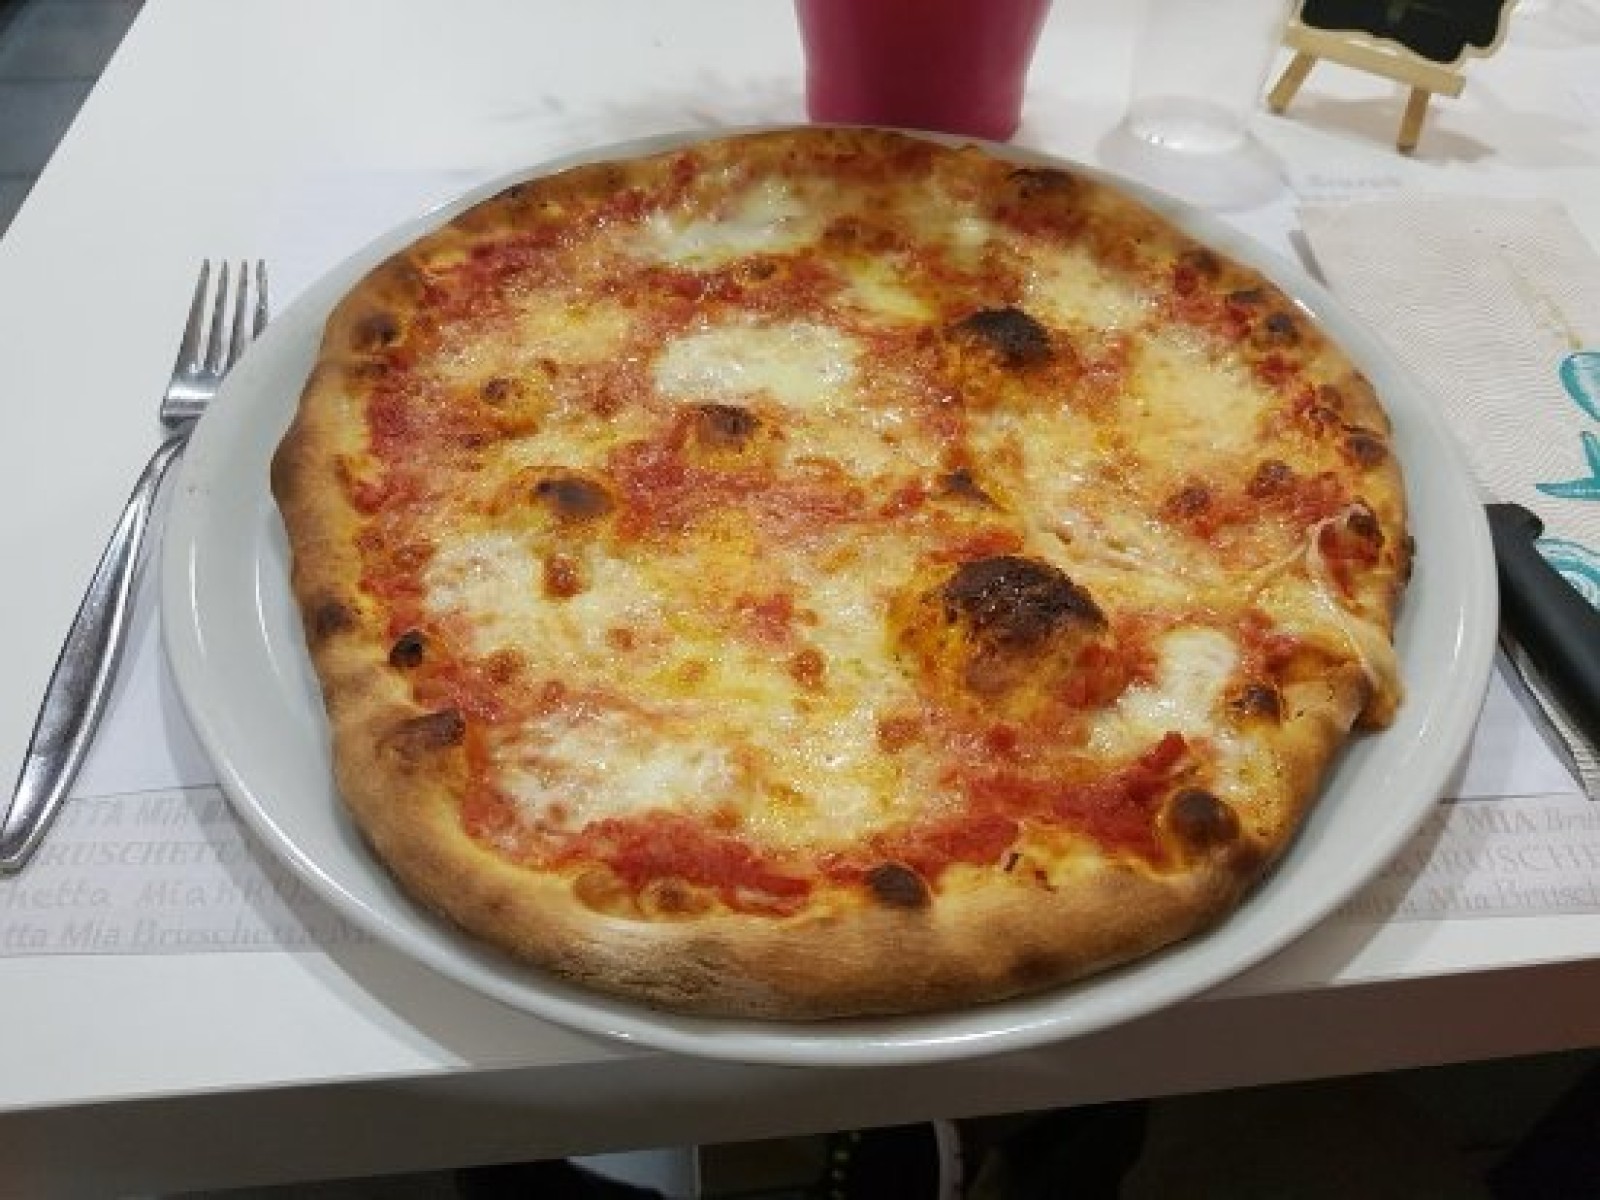 Ristorante pizzezia - Rif. BOR107/19